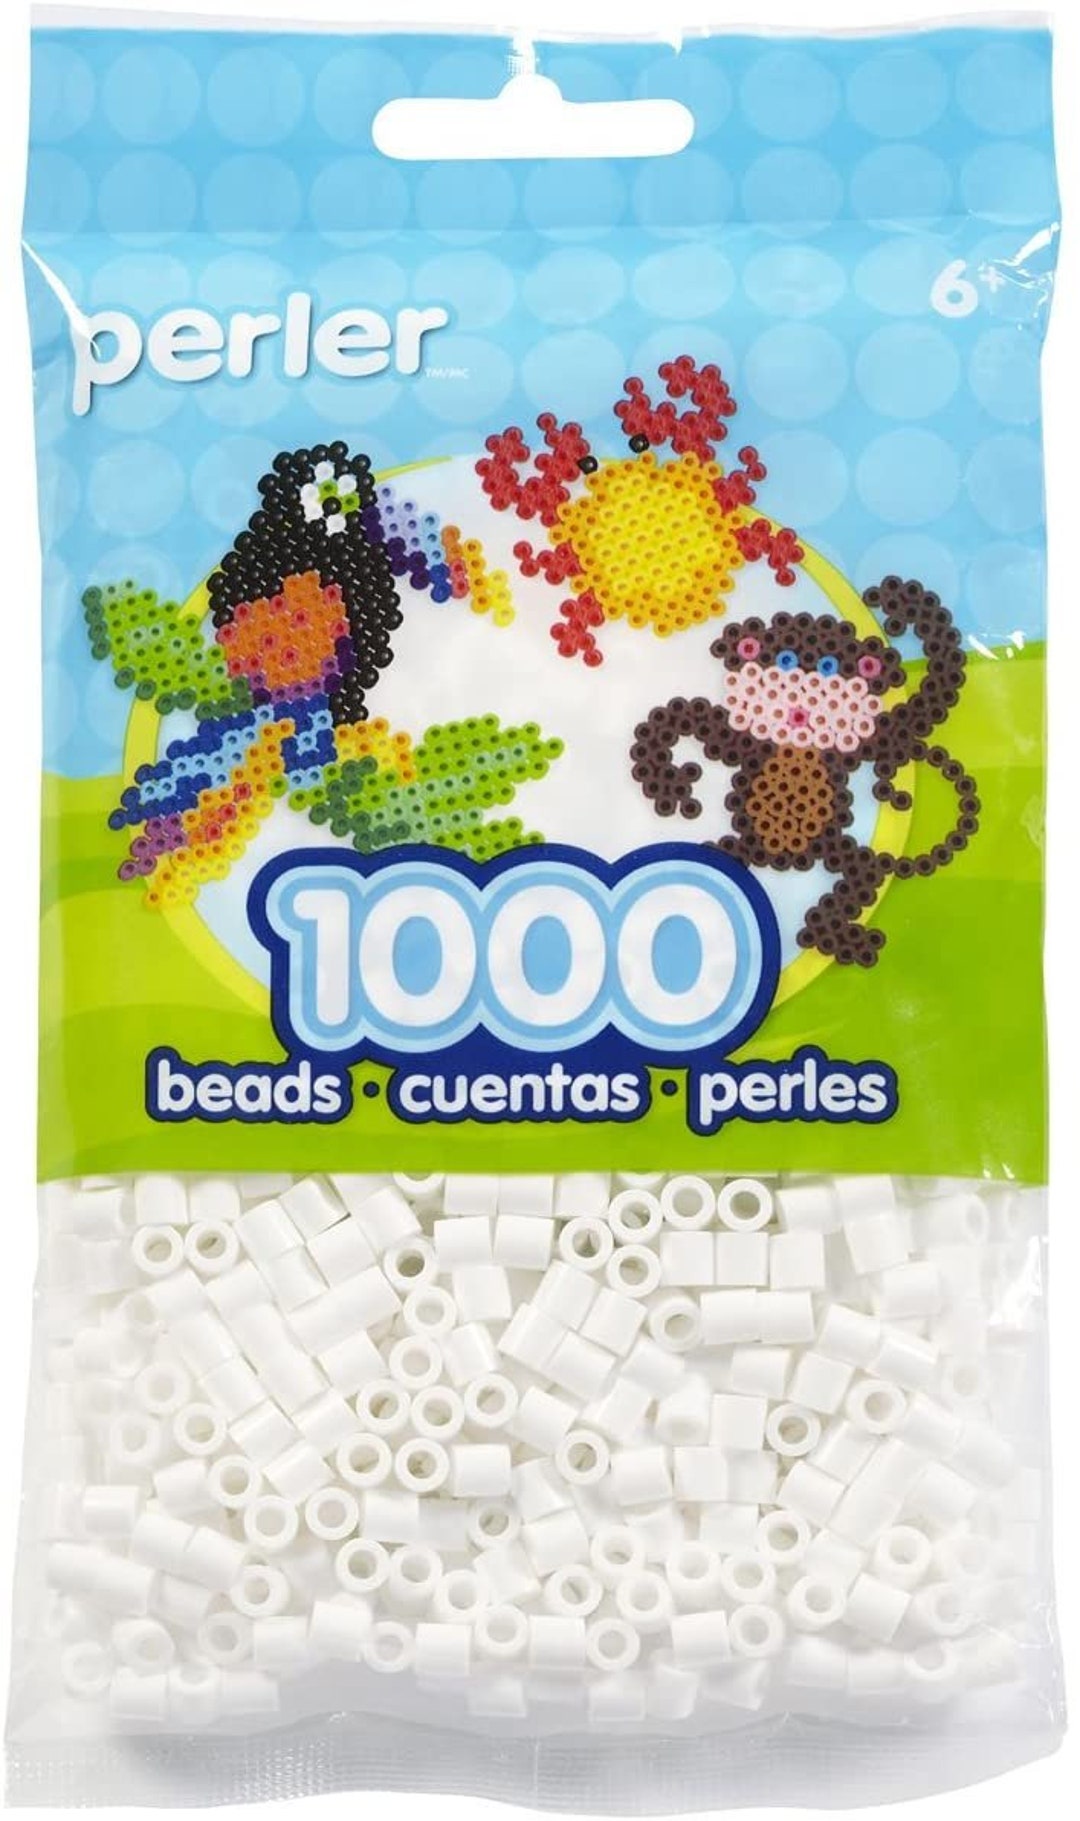 Perler Beads Bulk Buy: 1,000 Count Cheddar (3 Pack) - Bulk Buy: 1,000 Count  Cheddar (3 Pack) . shop for Perler Beads products in India.